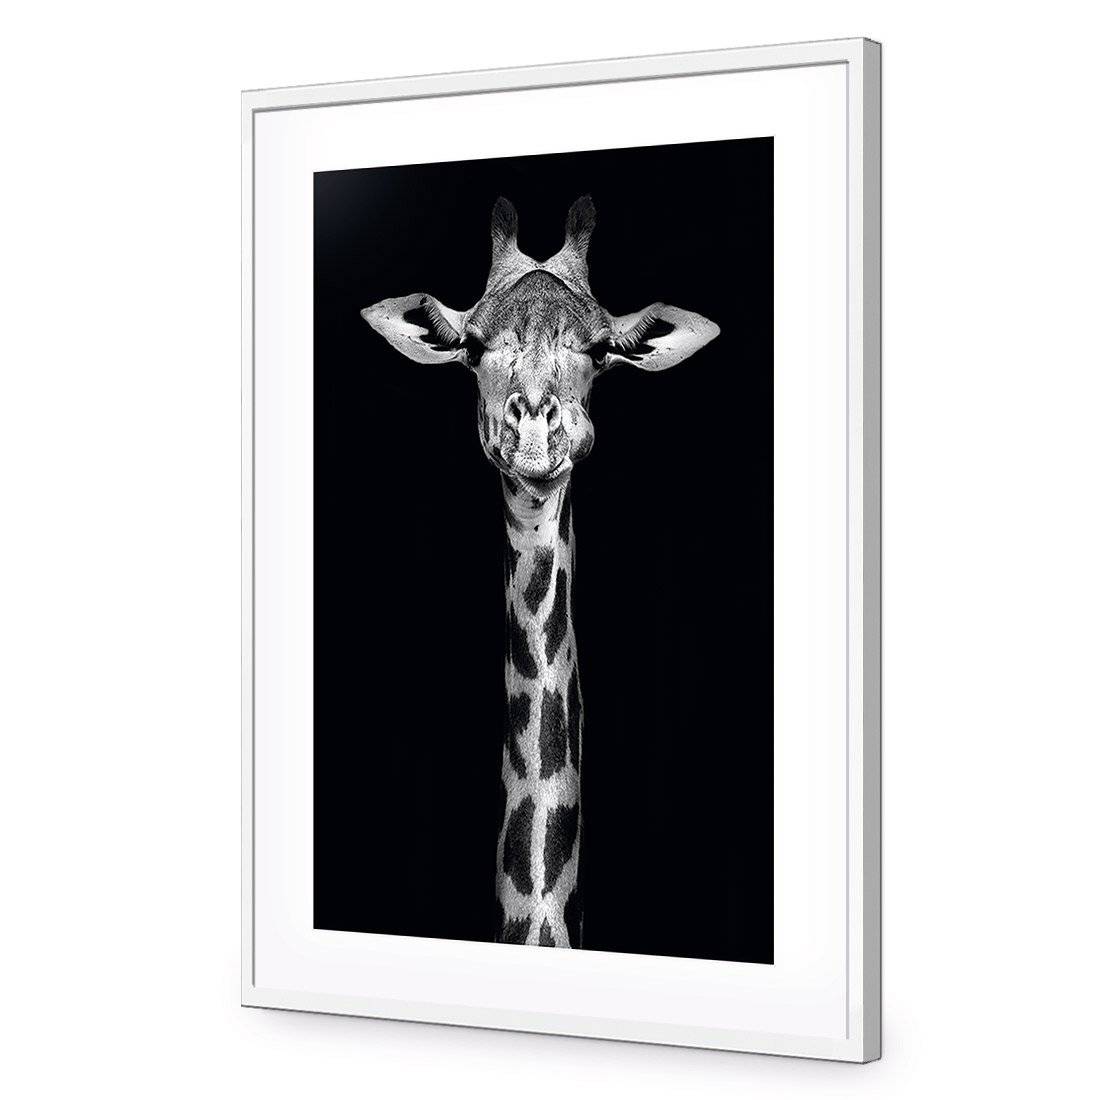 Thornycroft Giraffe-Acrylic-Wall Art Design-With Border-Acrylic - White Frame-45x30cm-Wall Art Designs